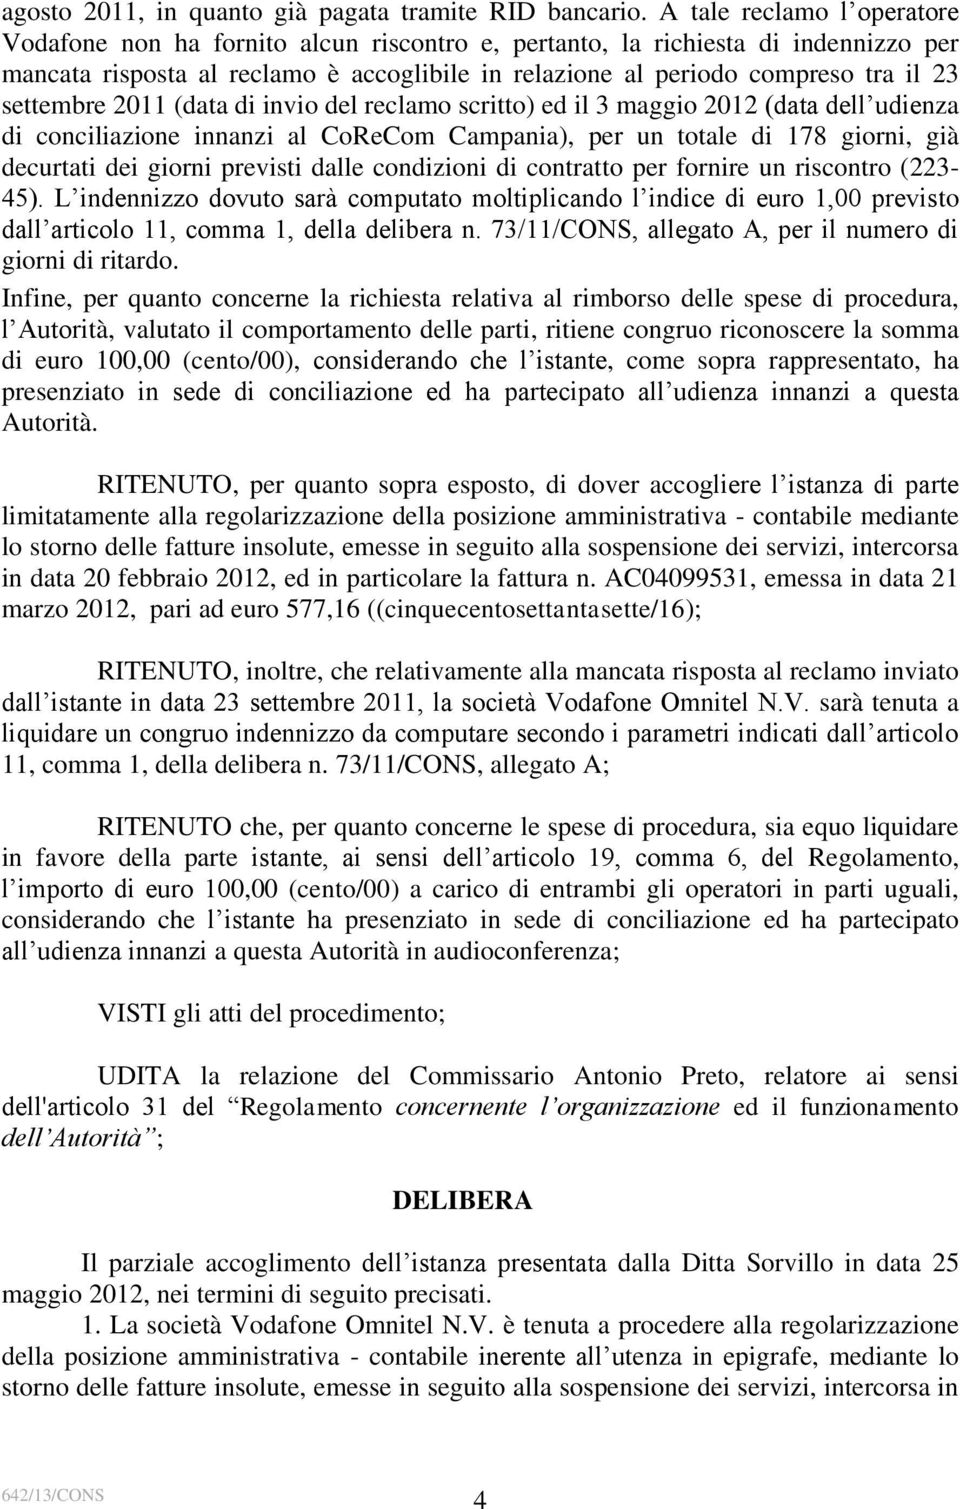 settembre 2011 (data di invio del reclamo scritto) ed il 3 maggio 2012 (data dell udienza di conciliazione innanzi al CoReCom Campania), per un totale di 178 giorni, già decurtati dei giorni previsti